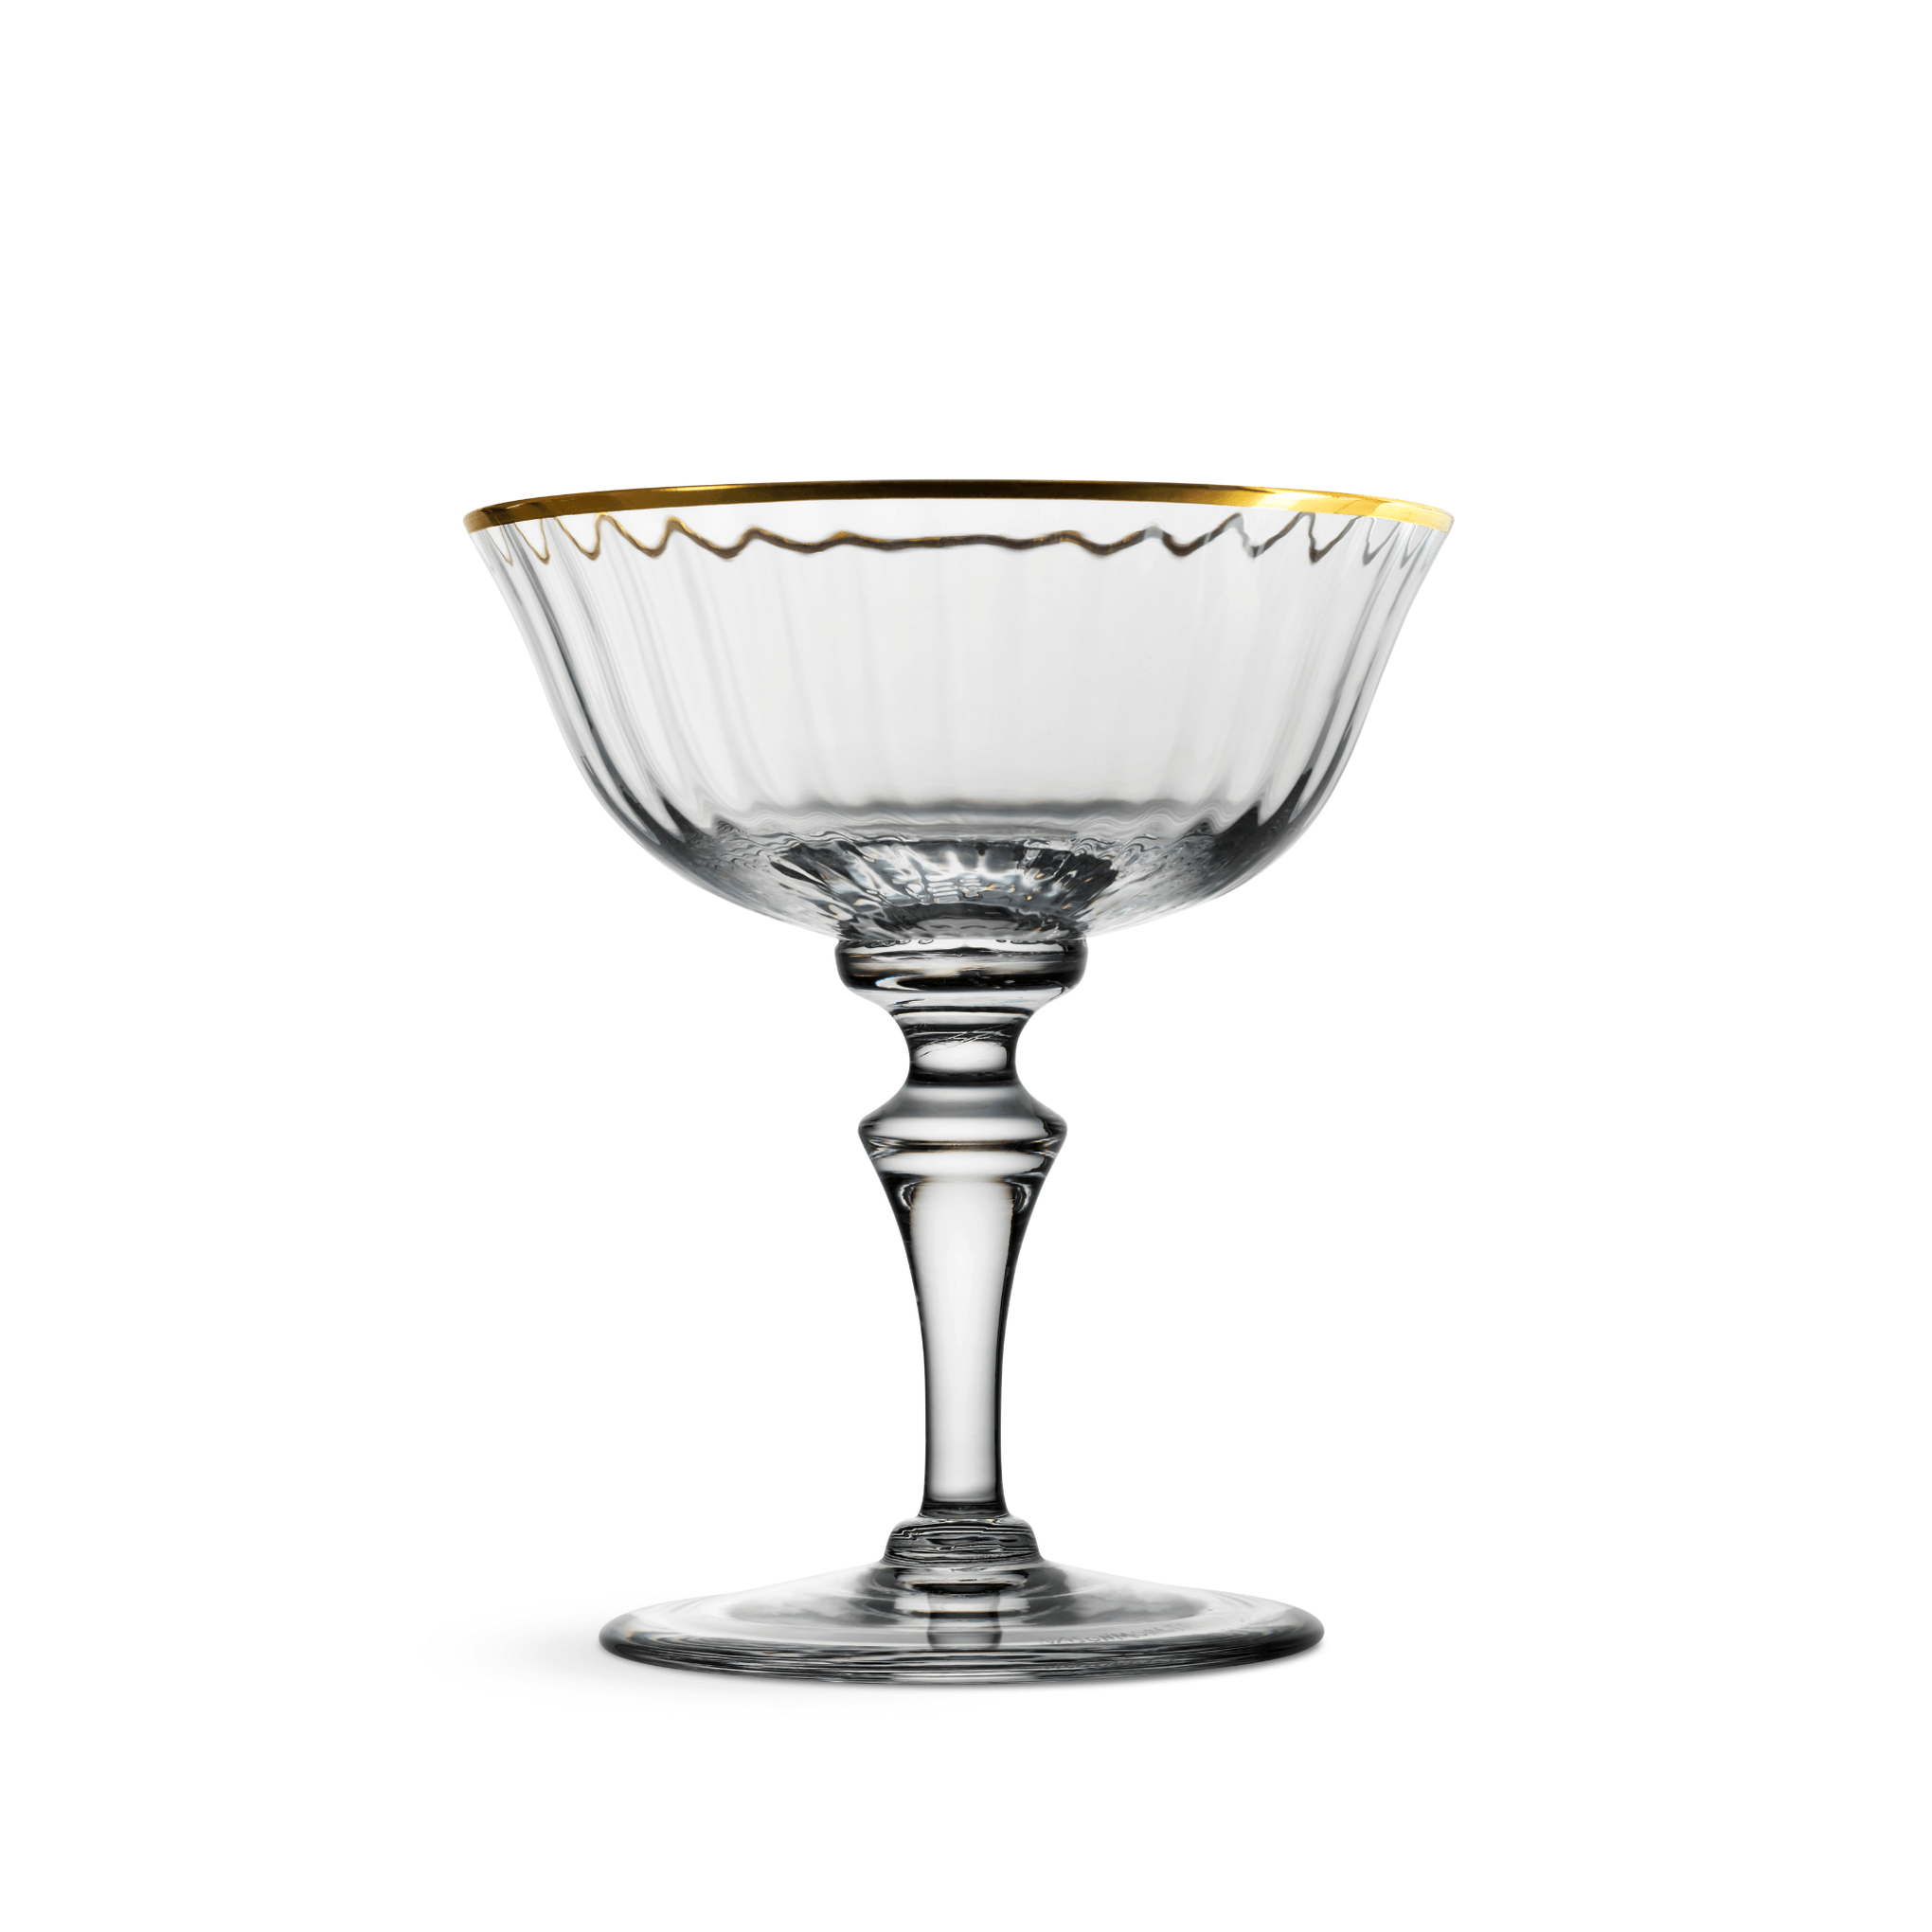 Nason Moretti 2/78 Murano Champagne Coupe Glass Gold Rim